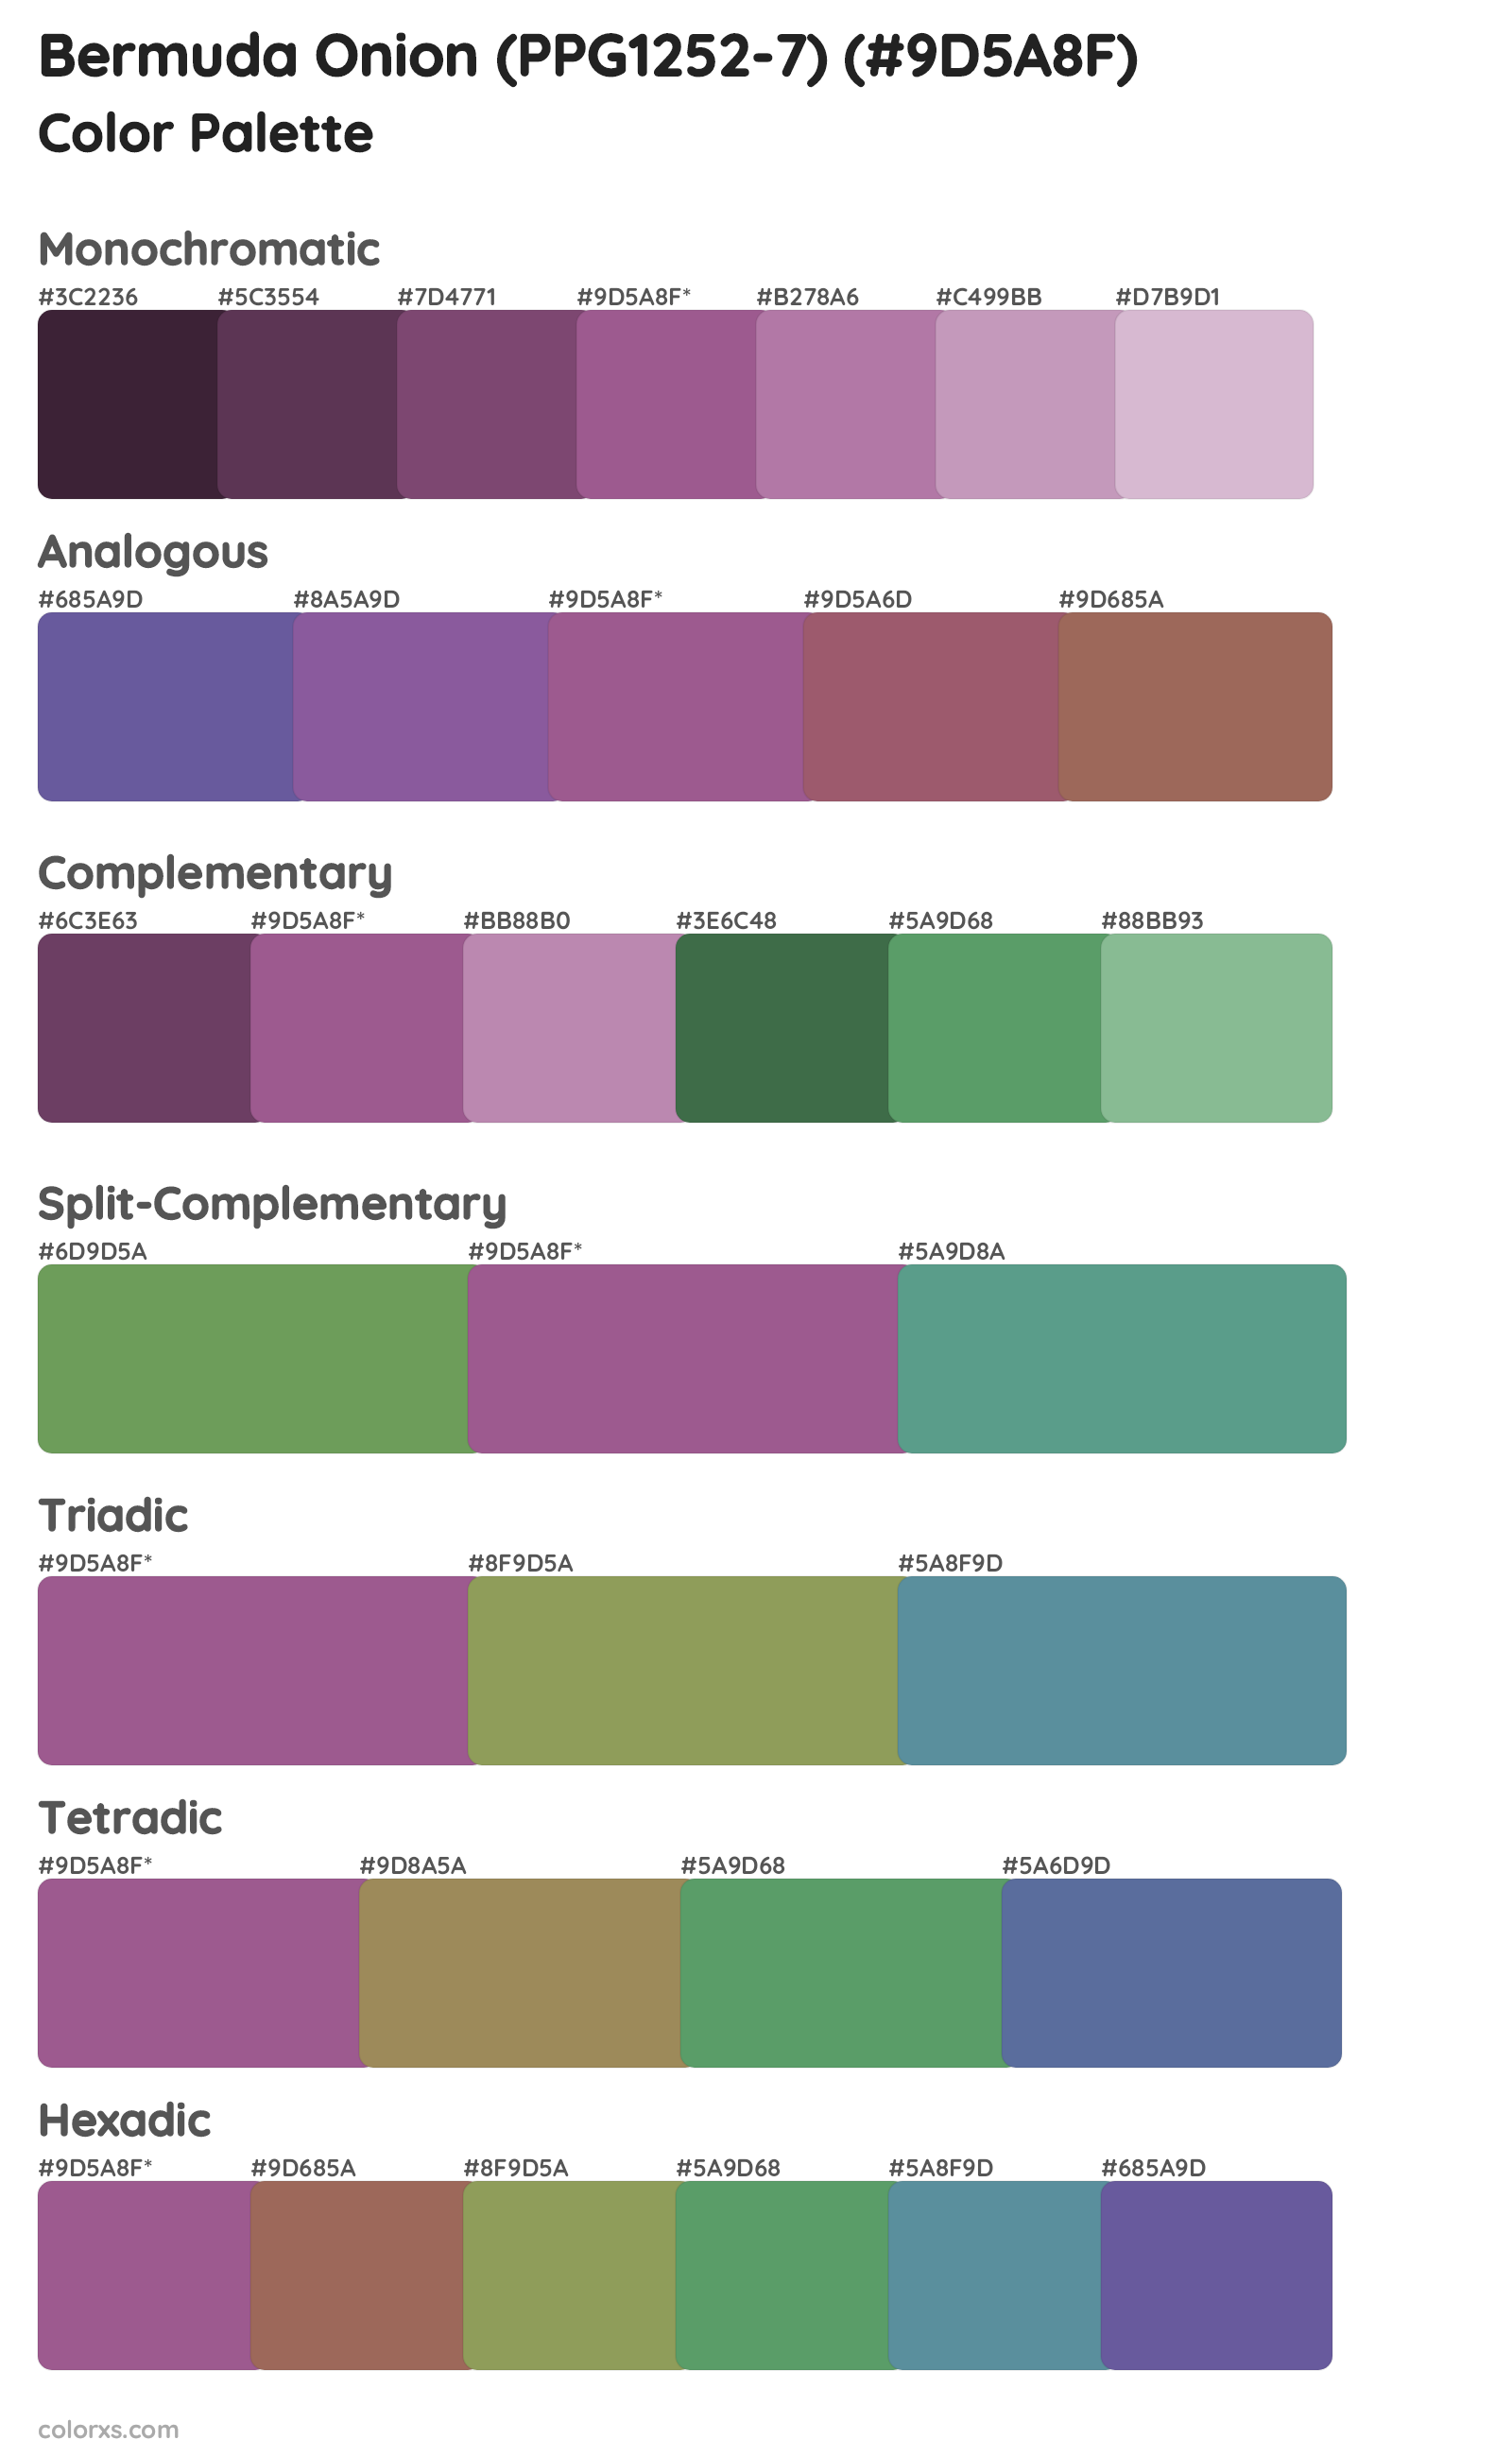 Bermuda Onion (PPG1252-7) Color Scheme Palettes